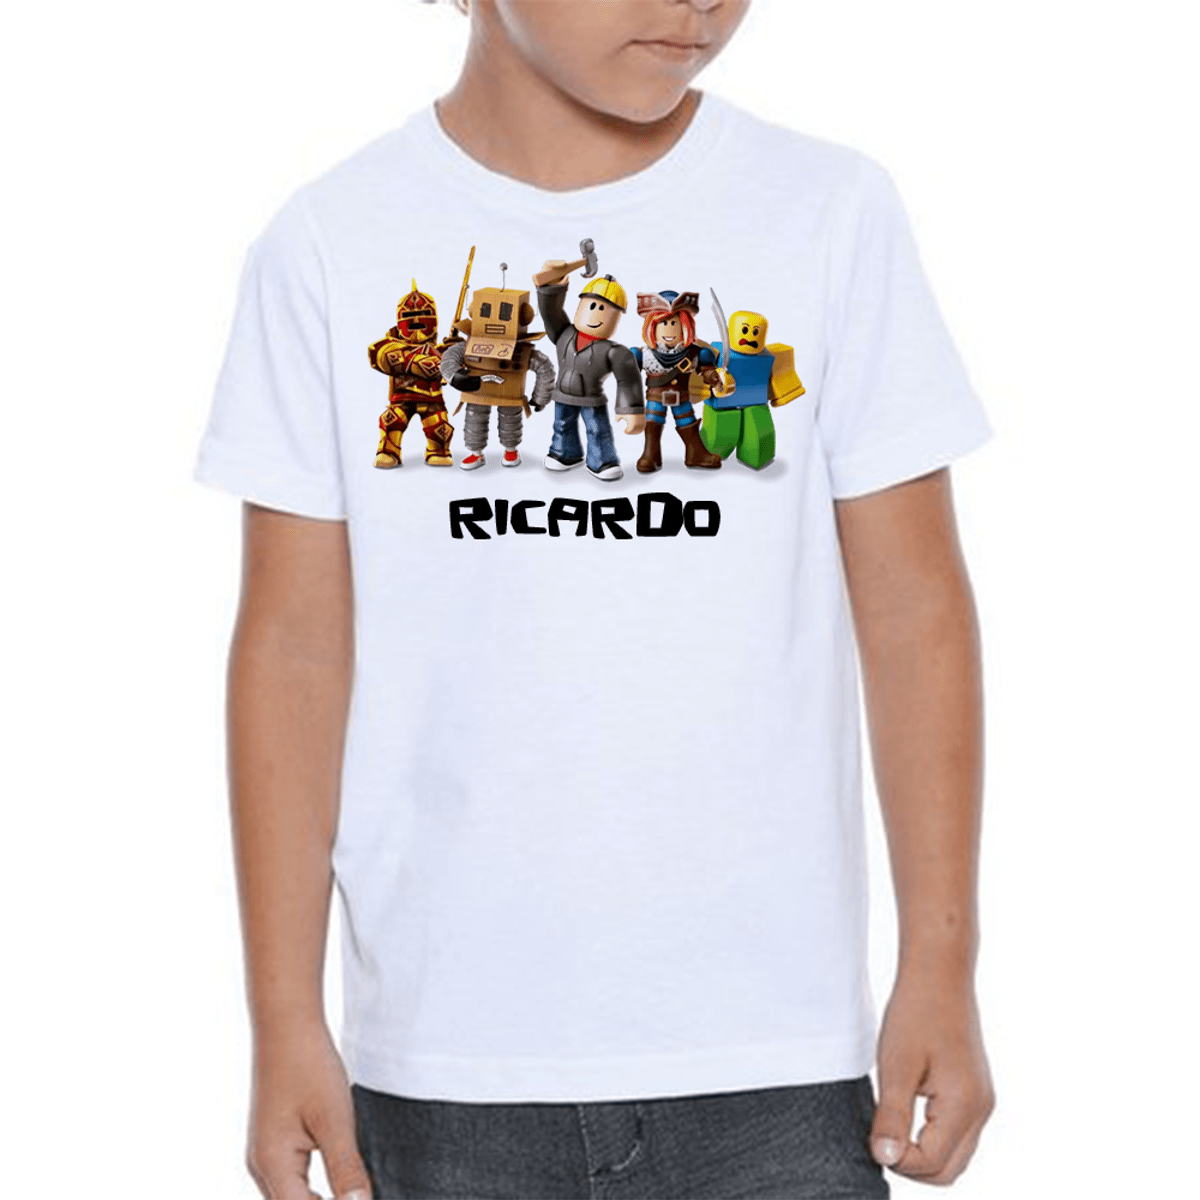 Camisas e Vestido Roblox - Família, Roupa Infantil para Menino Usado  72873395